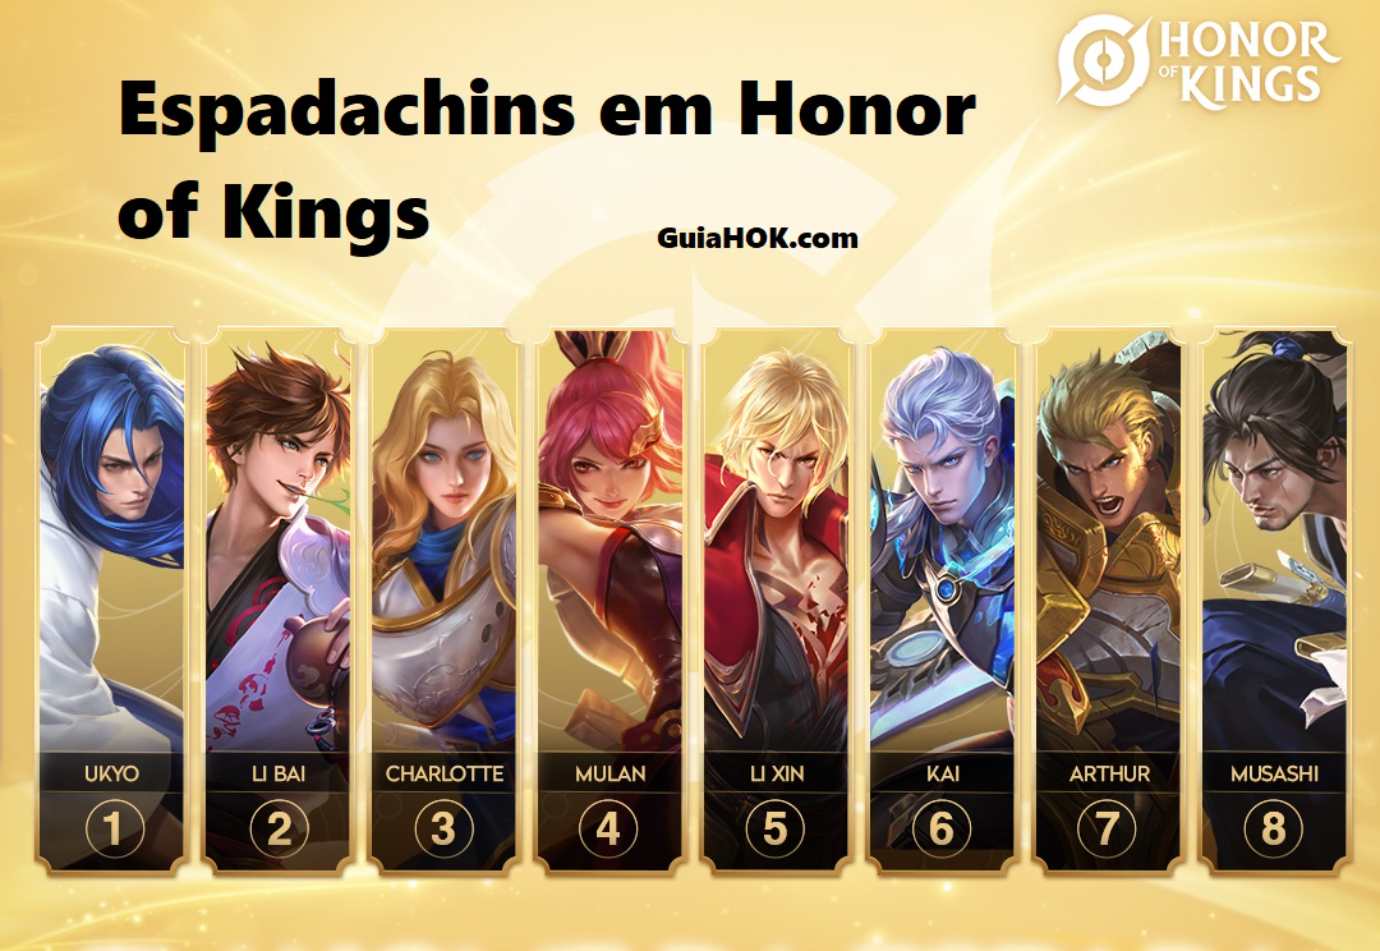 Os melhores espadachins em Honor of Kings (HOK)